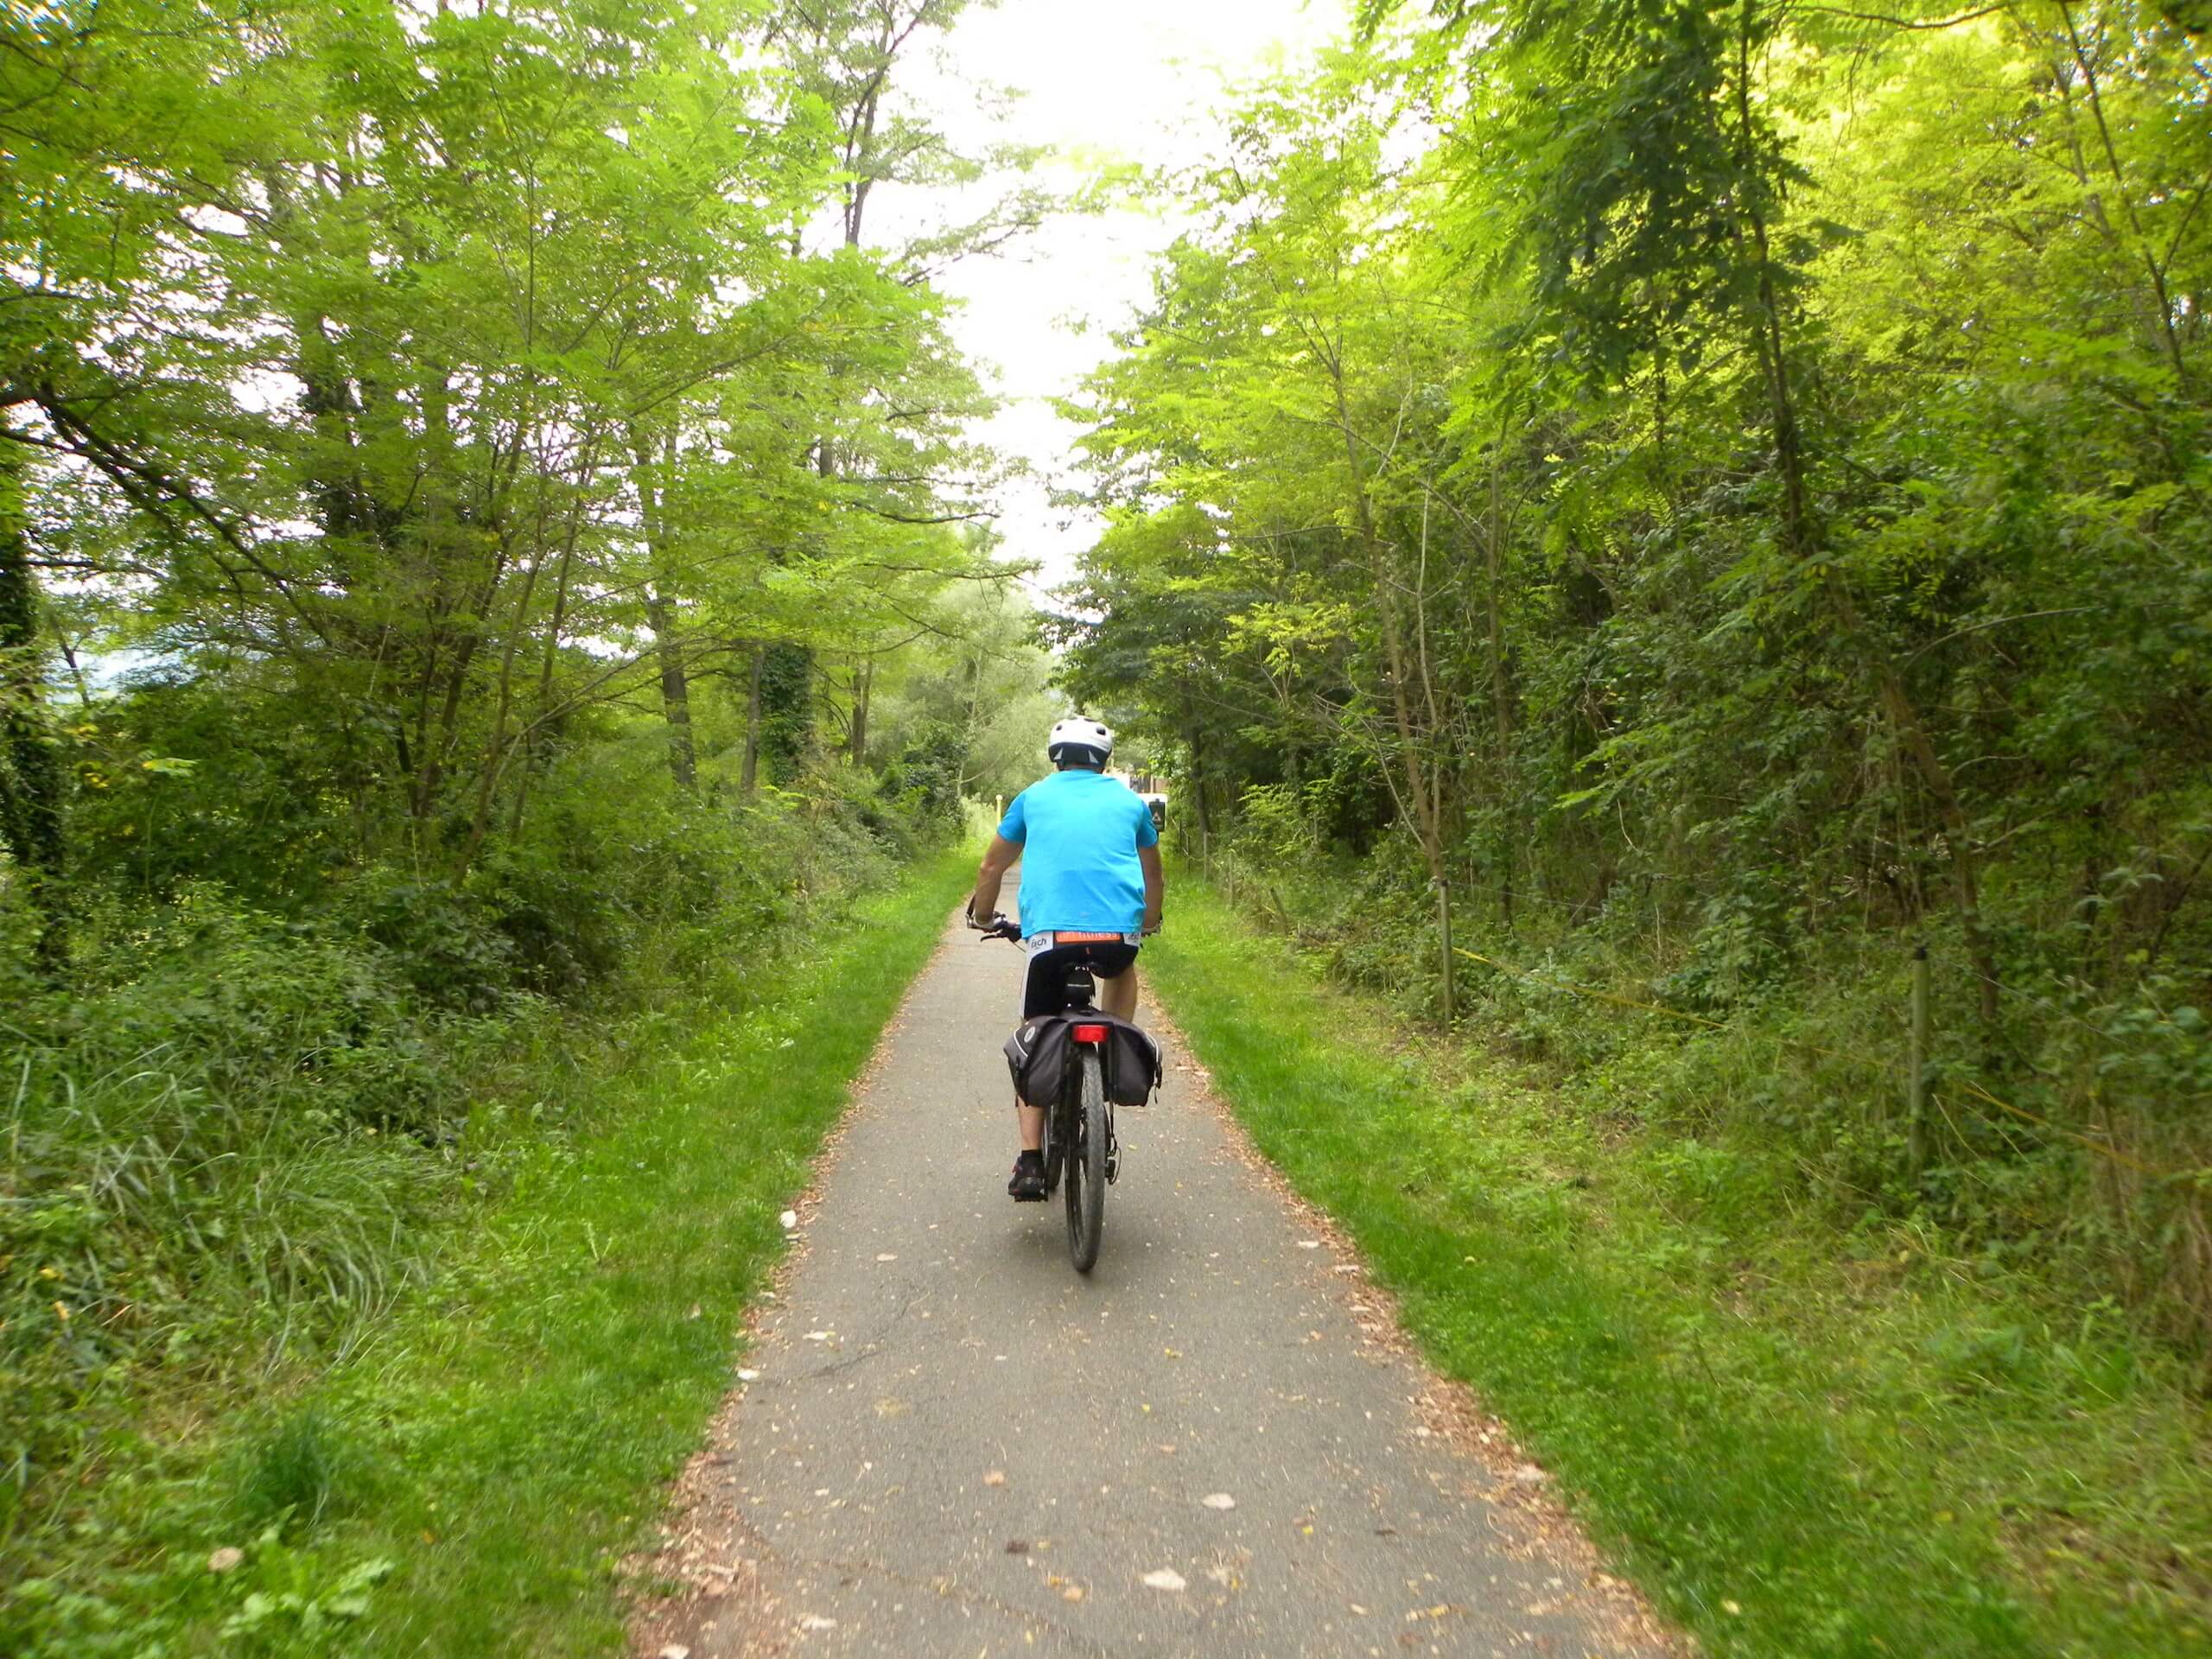 Biker riding the green path in Costa Brava